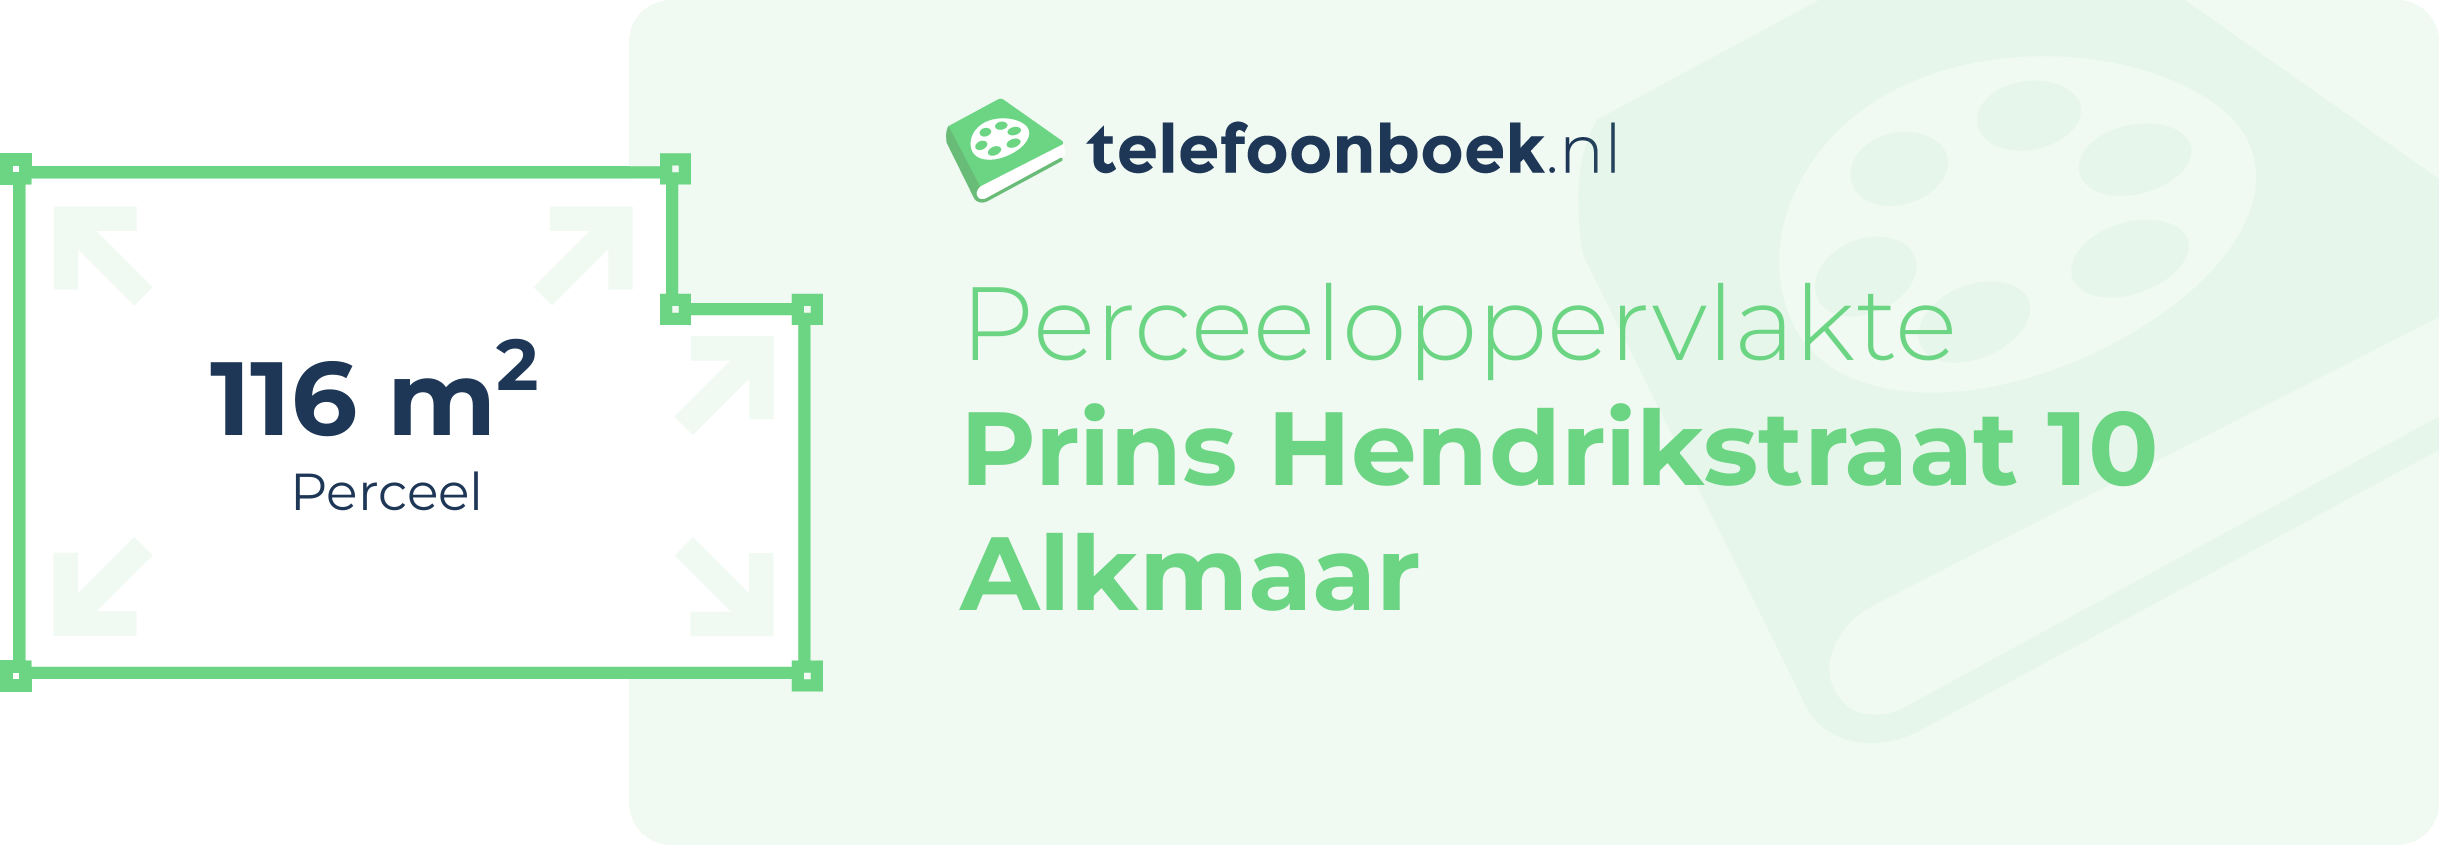 Perceeloppervlakte Prins Hendrikstraat 10 Alkmaar